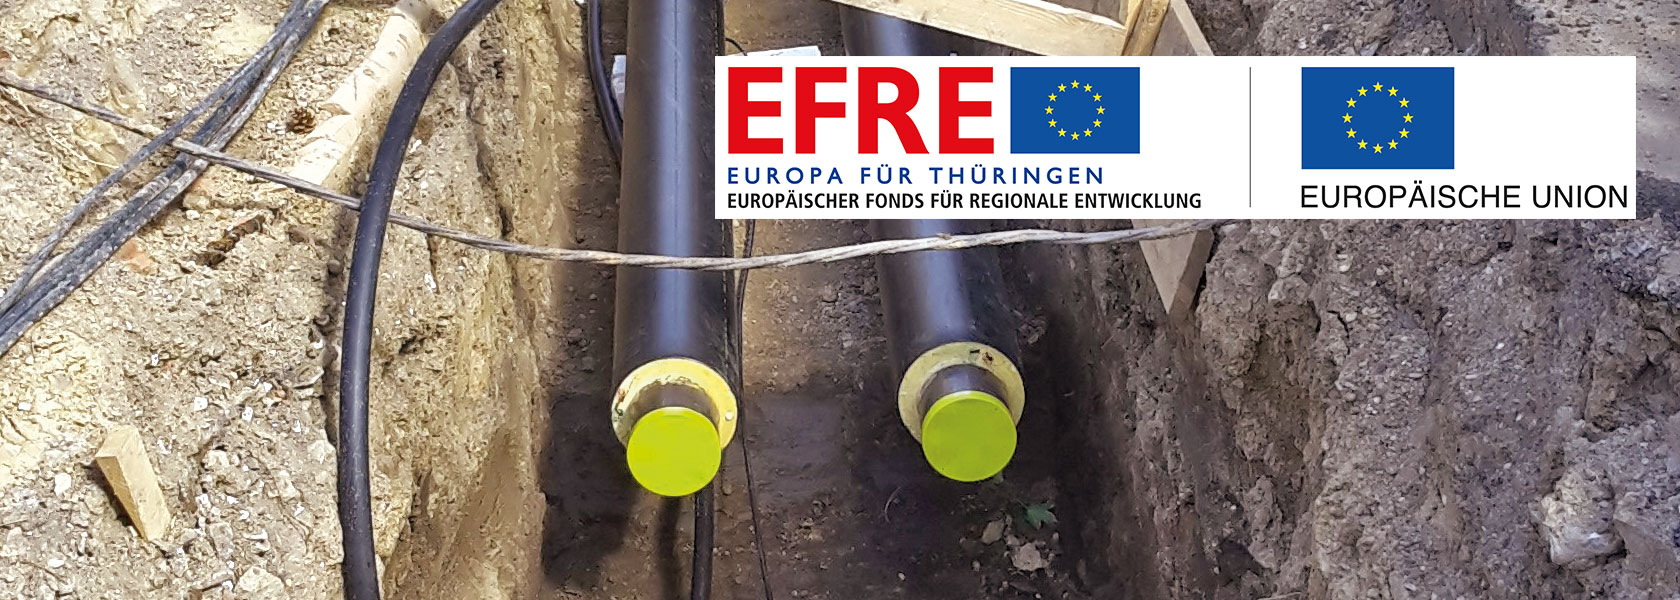 Graben mit zu verlegenden Rohren für Fernwärme in Erfurt mit EFRE-Plakette